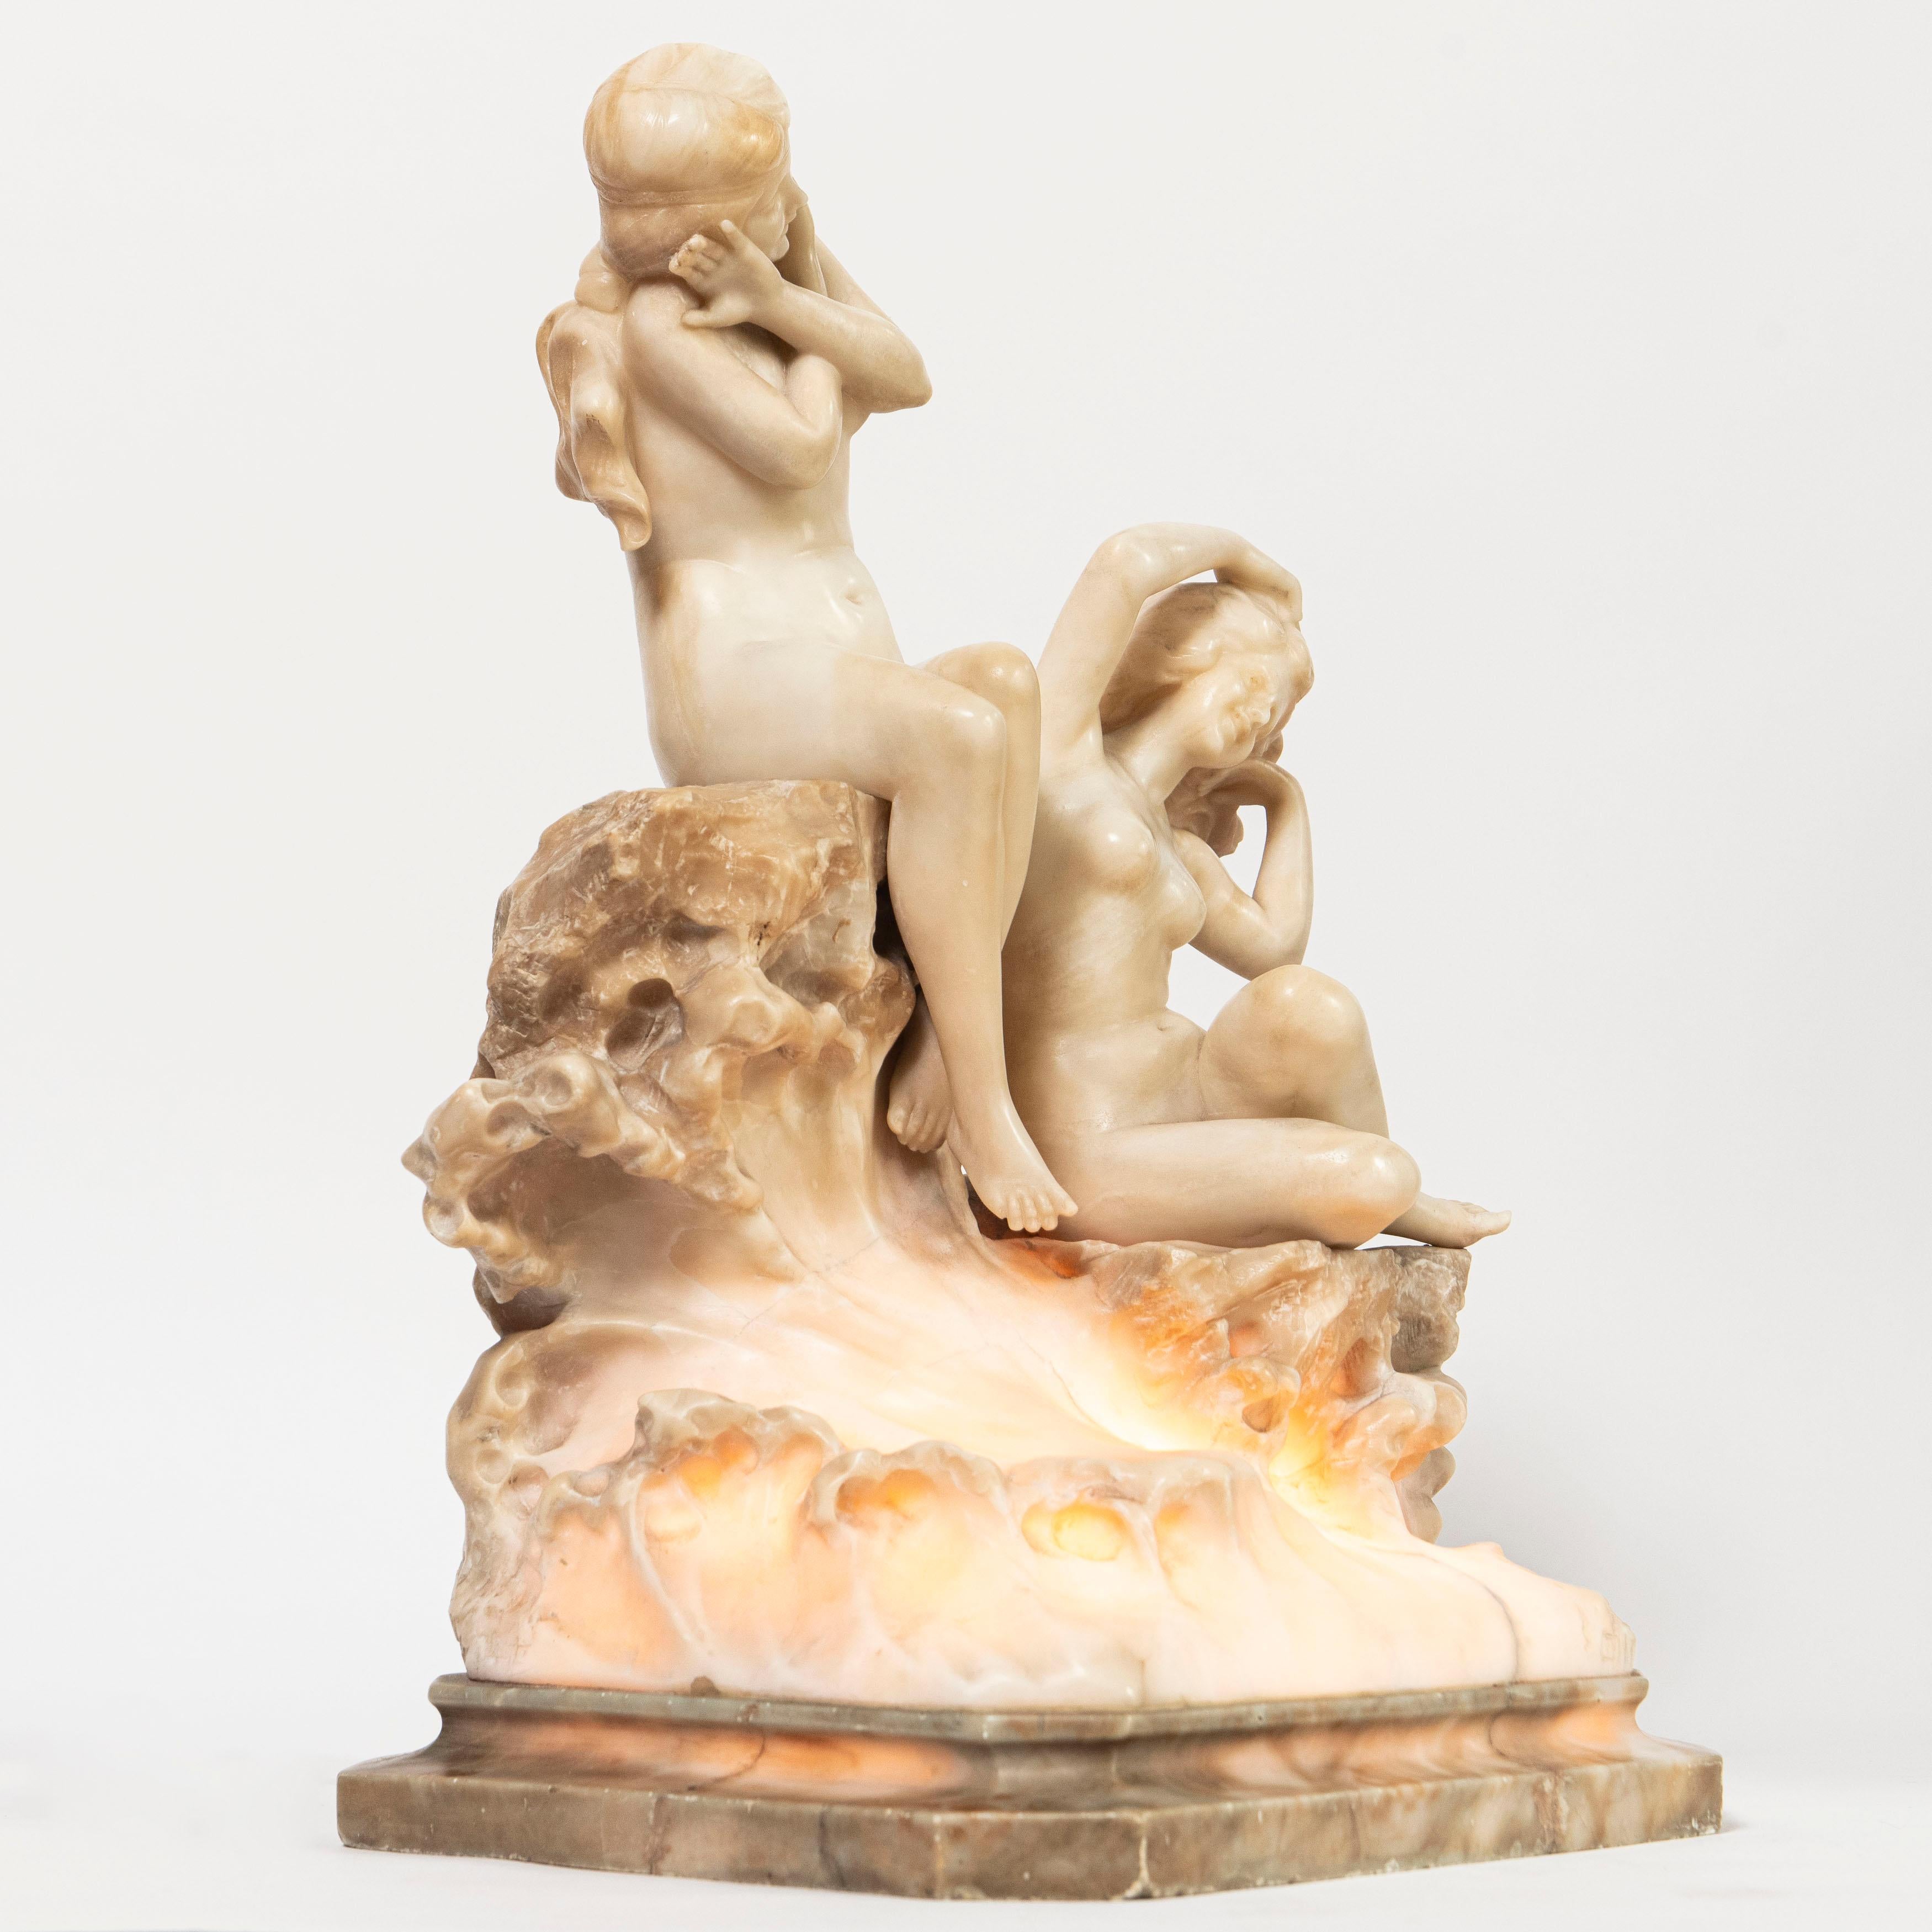 Skulptur einer Alabaster-Tischlampe, die Bastiani zugeschrieben wird. Italien, Ende des 19. Jahrhunderts
Ildebrando Bastiani zugeschrieben